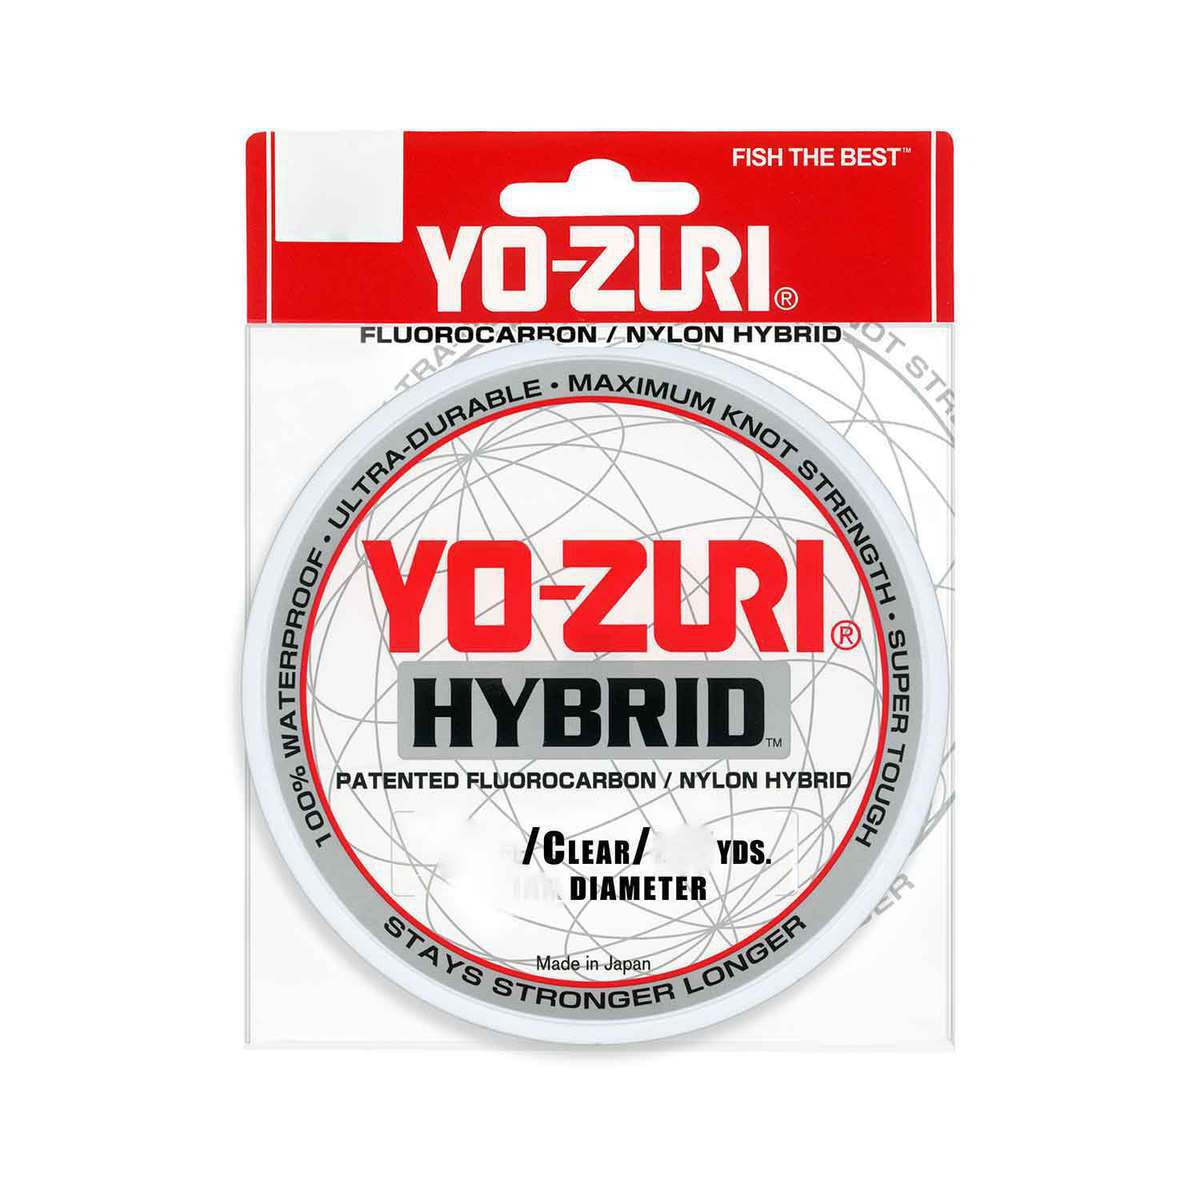 Yo-Zuri Hybrid Copolymer Fishing Line - 8lb, Clear, 275yds